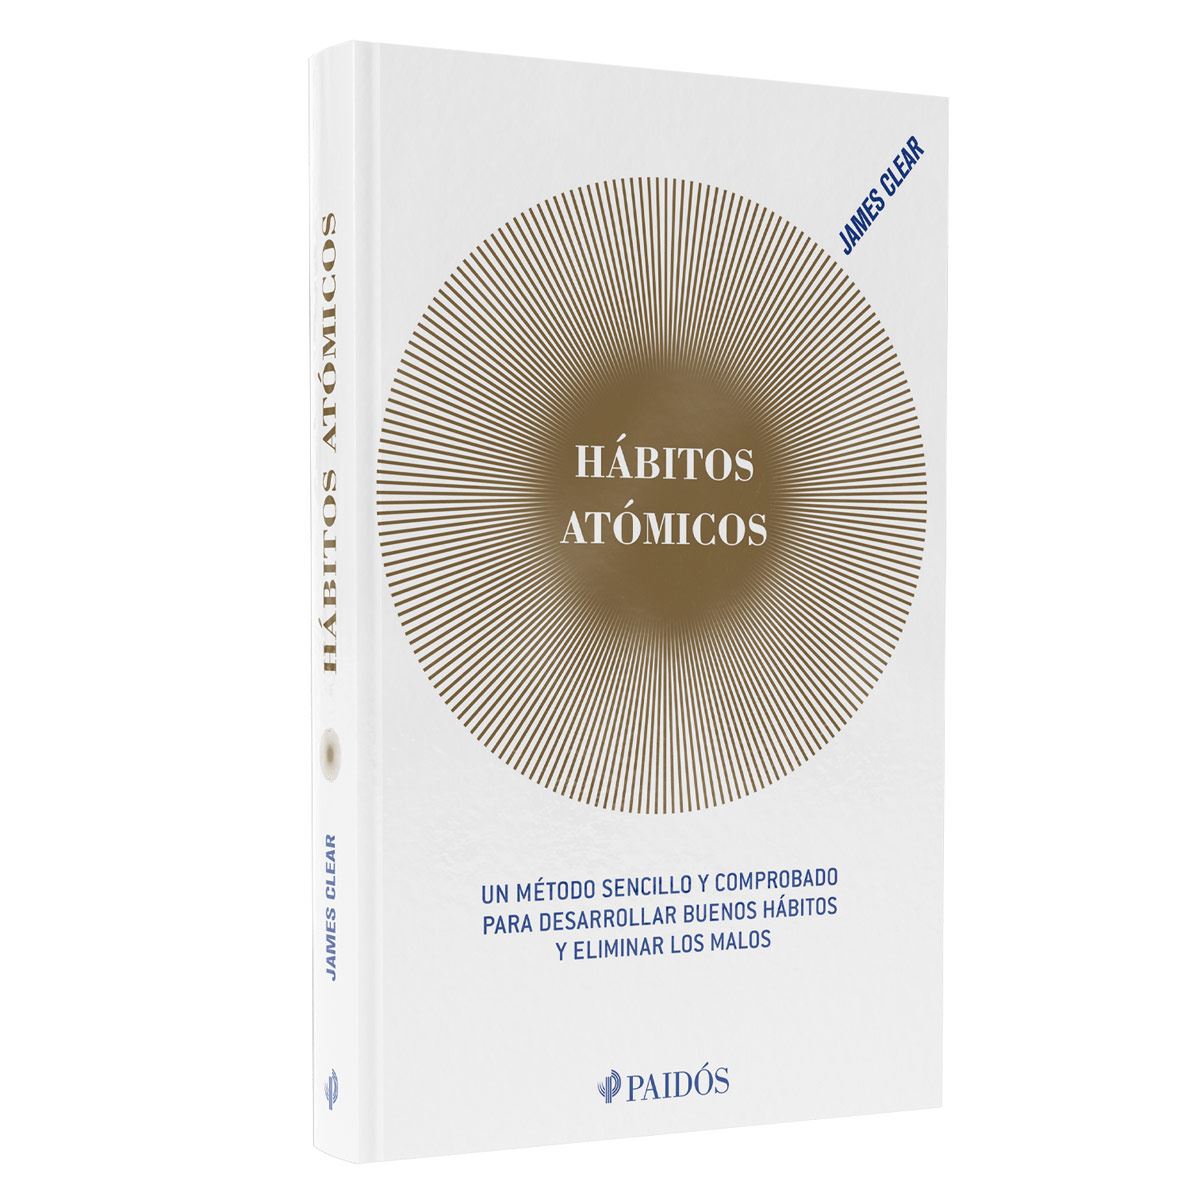 Librería Dykinson - Estuche hábitos (Hábitos atómicos + Diario de